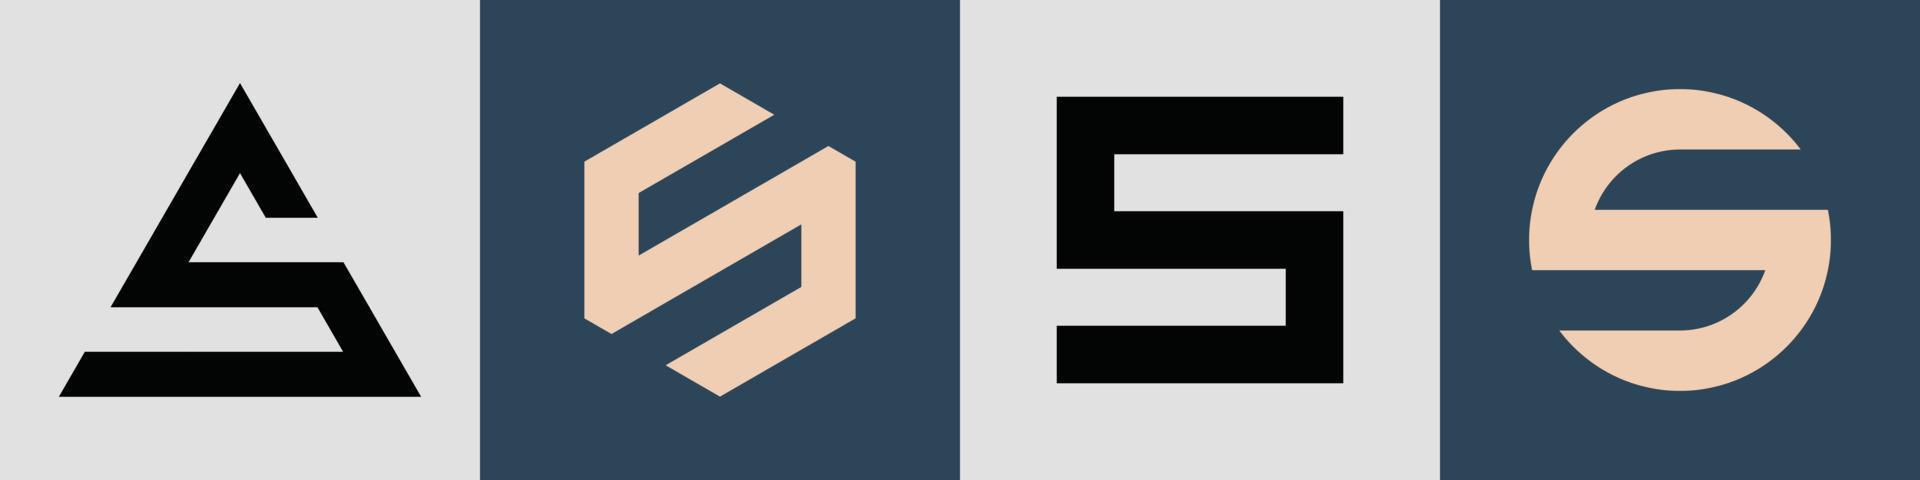 kreative einfache anfangsbuchstaben s logo design paket. vektor